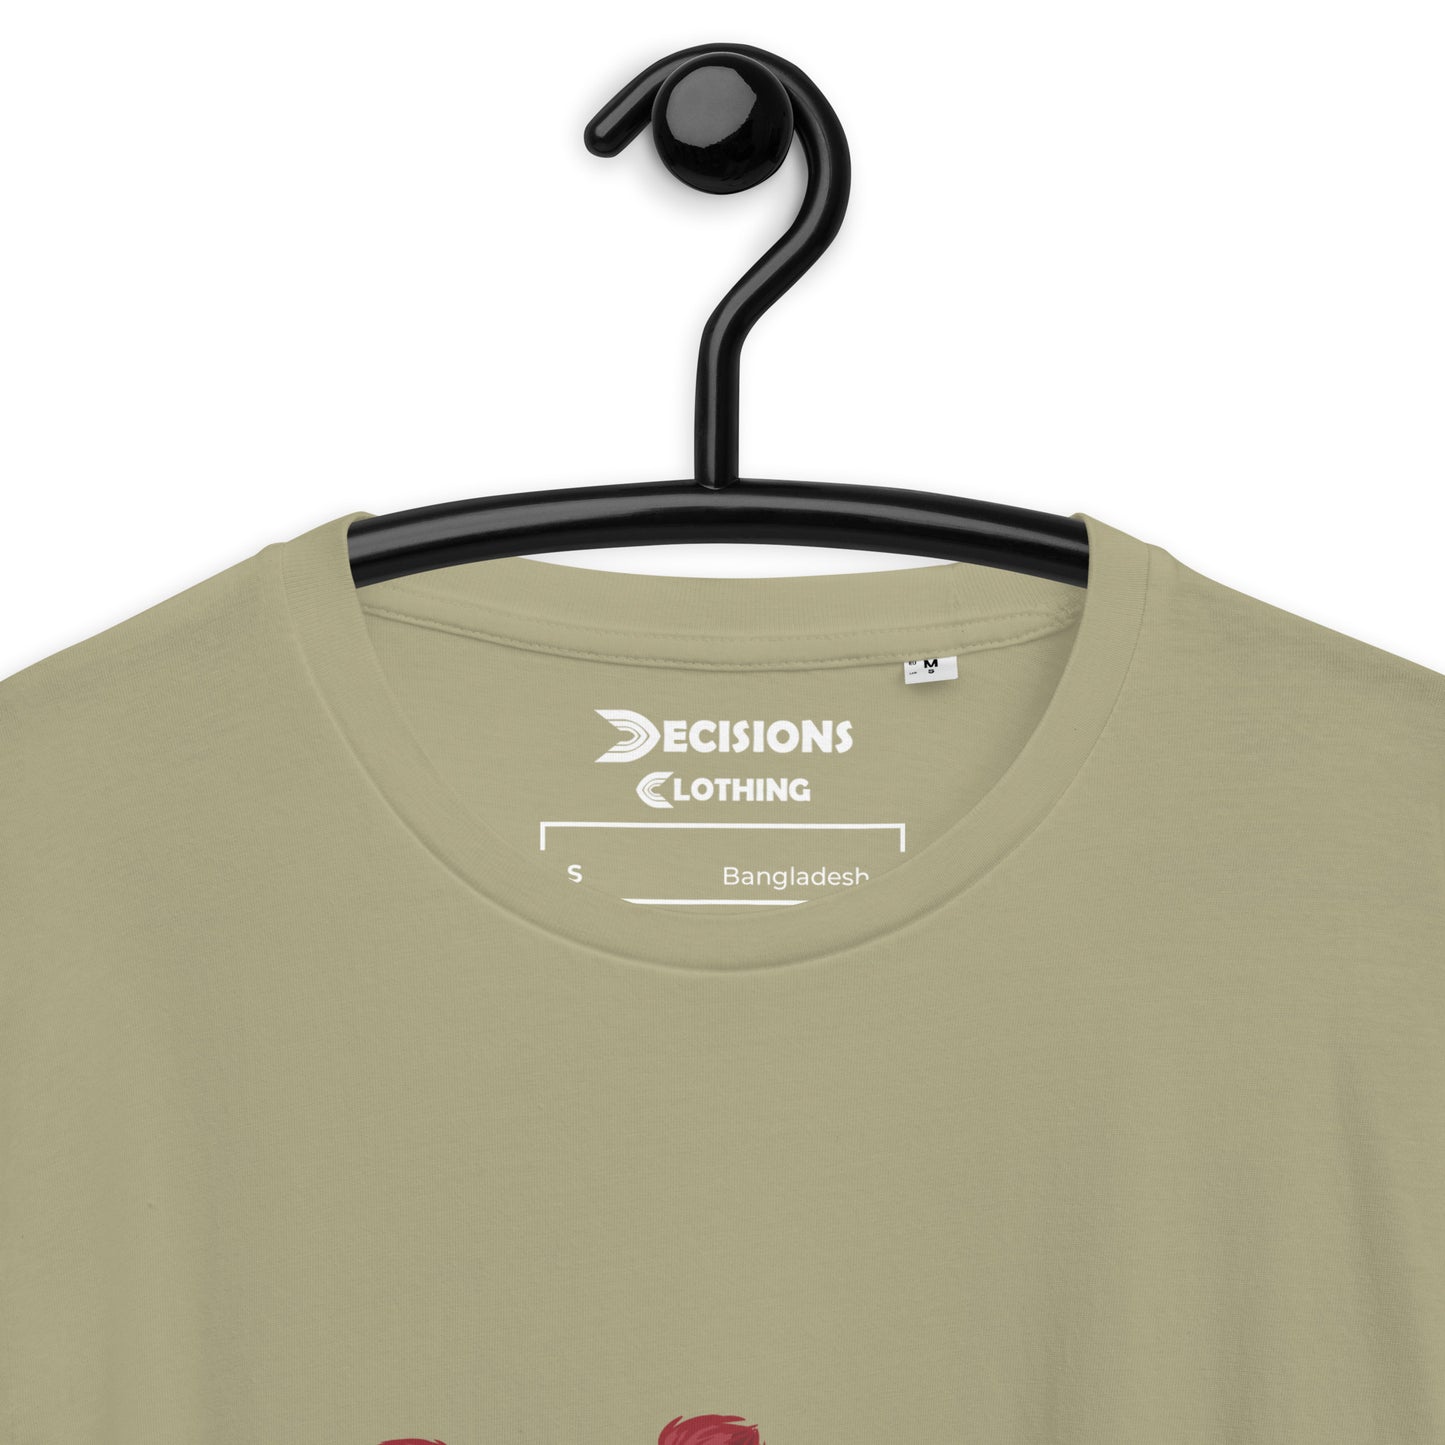 Lifeline Nessie T-Shirt (Apex Legends)